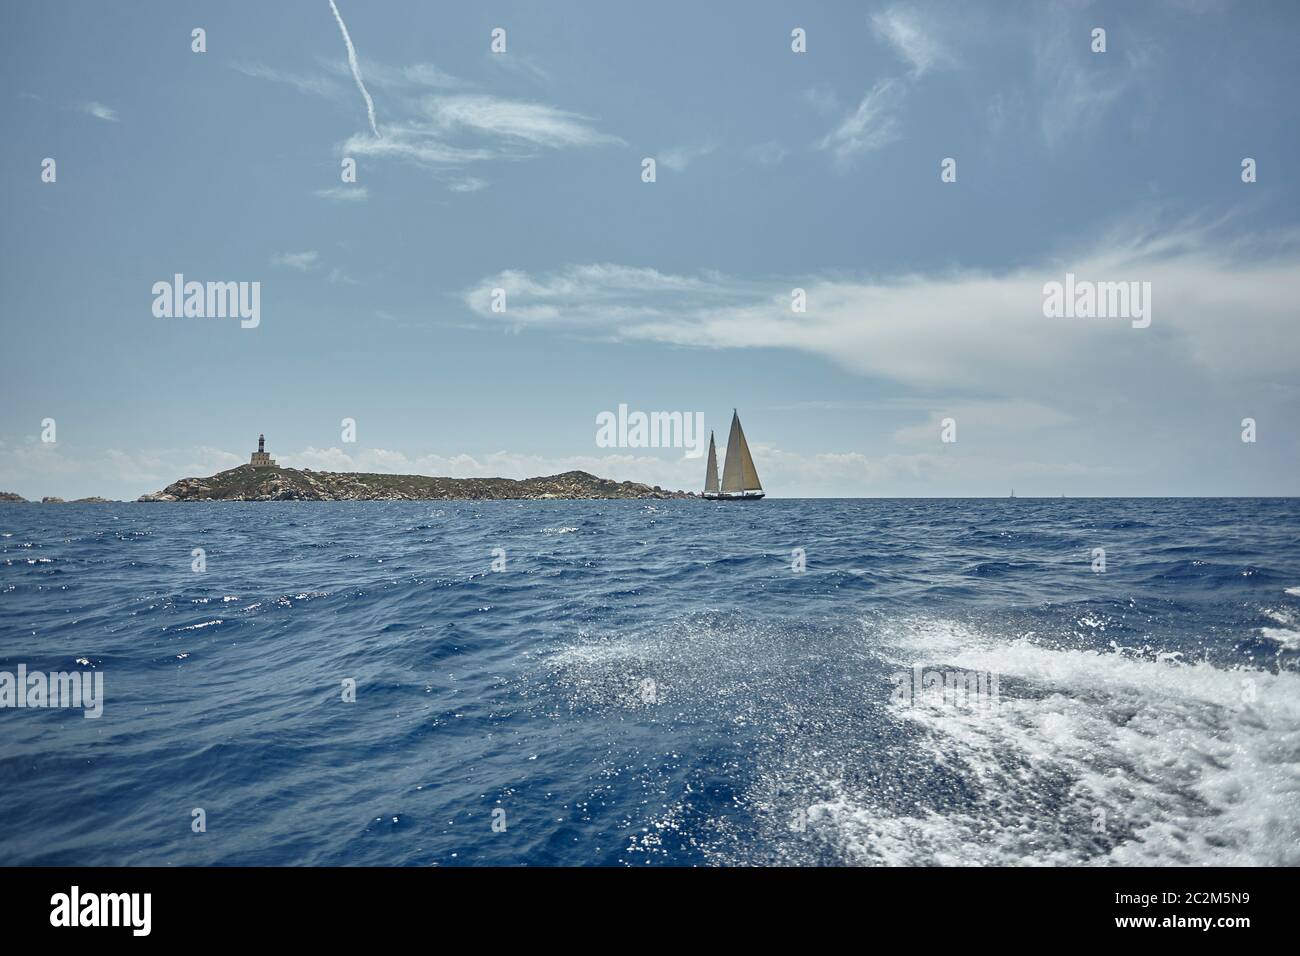 Zwei Segelboote Segeln im Meer vor einer herrlichen Landschaft: ein Leuchtturm am Ende einer Klippe trifft zwischen Himmel und Meer. Stockfoto